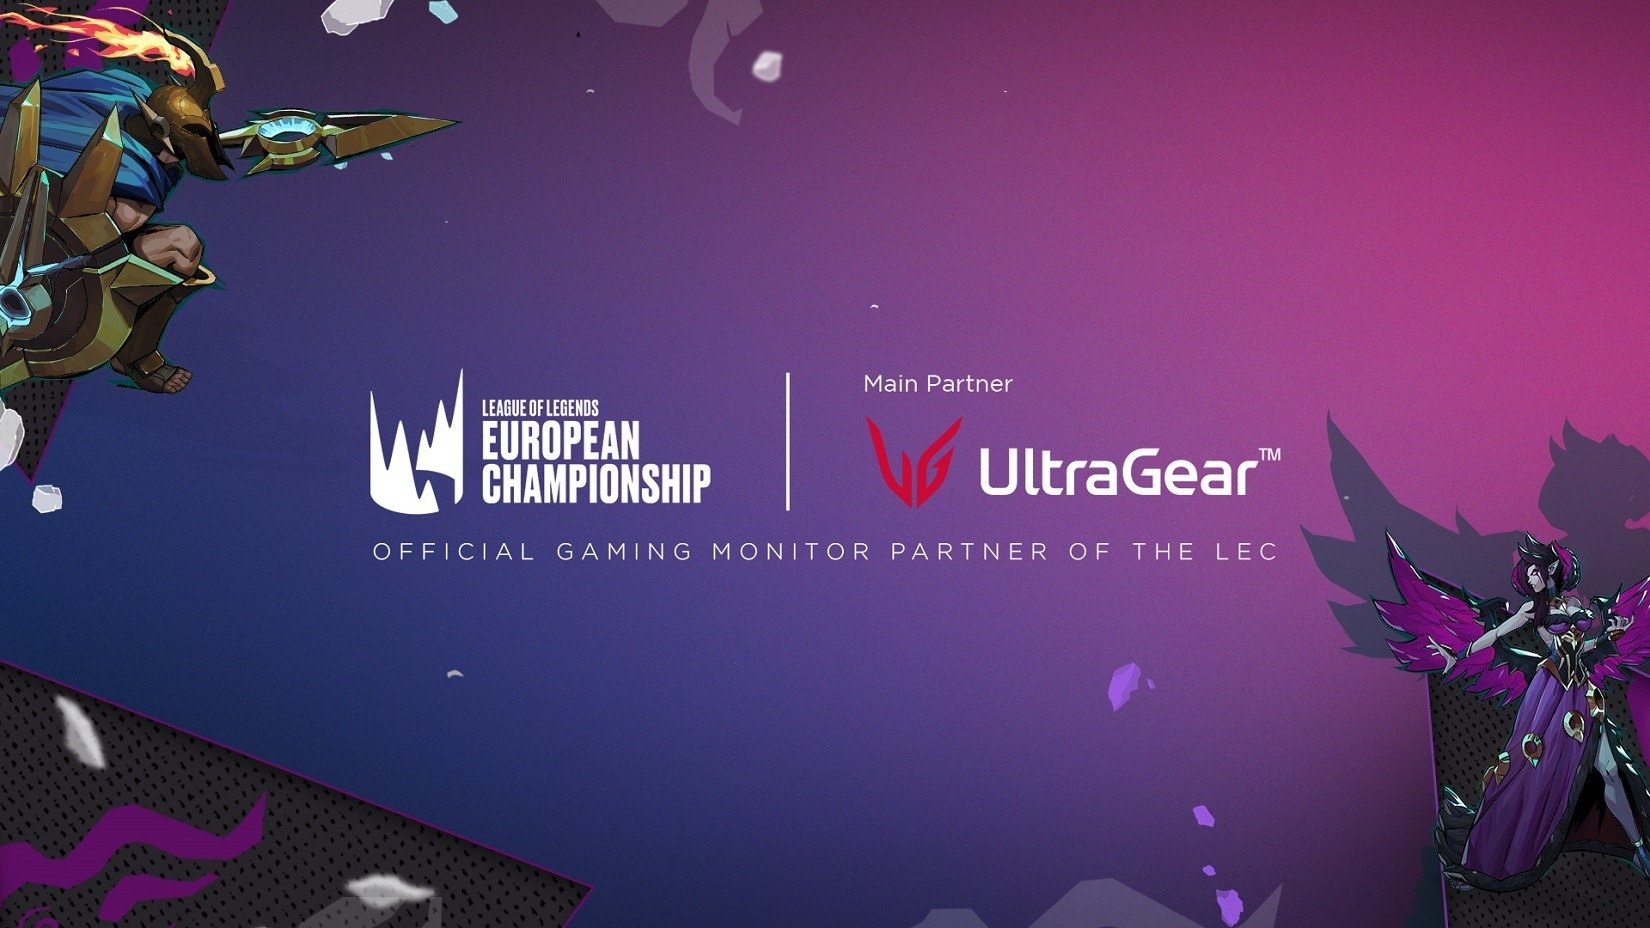 LG UltraGear zachwyca podczas letniego sezonu LEC 2022